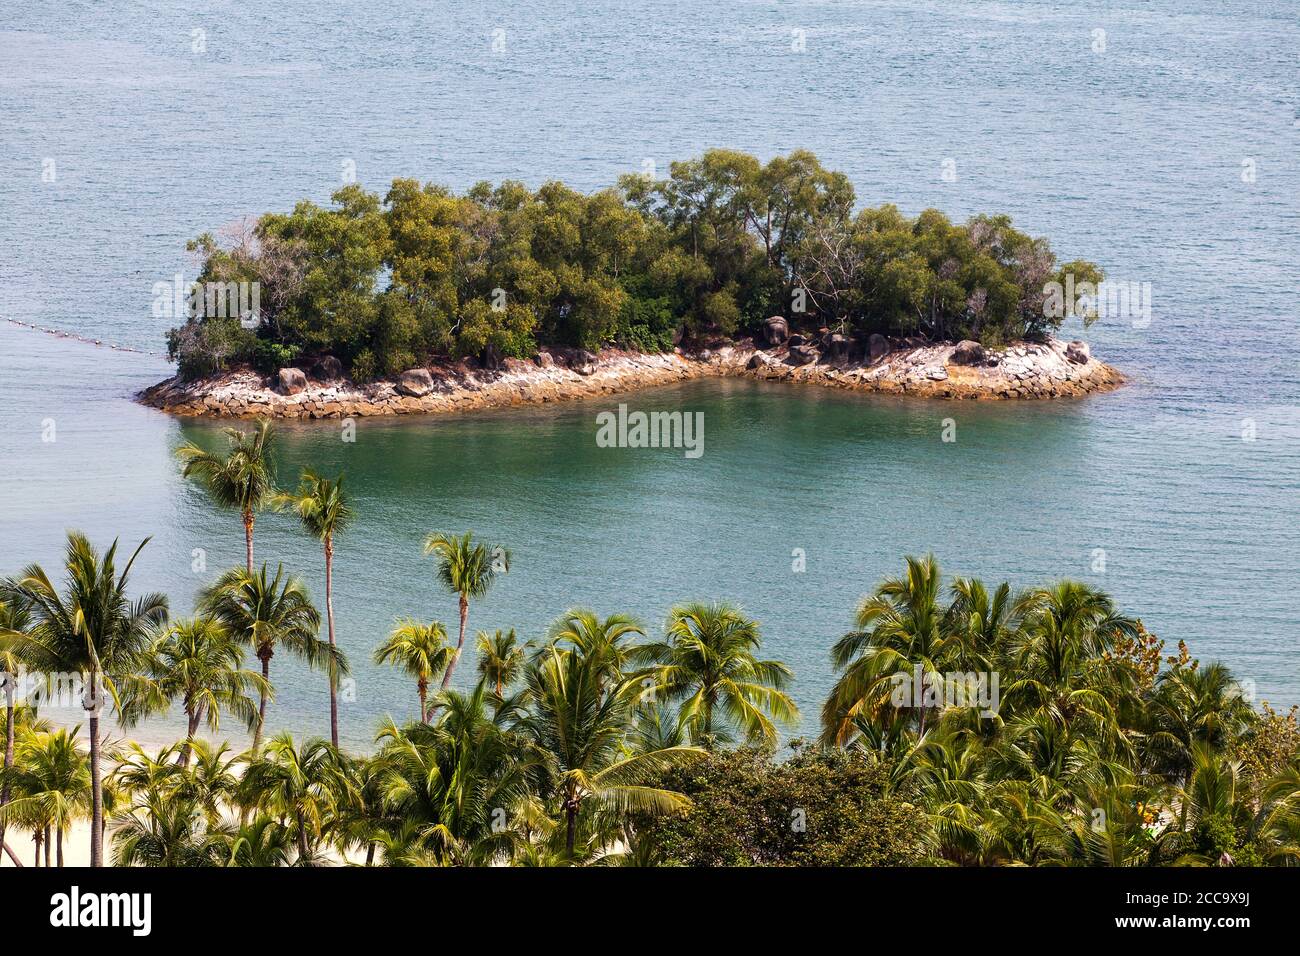 Wohlhabende Käufer schnappen sich ‘s„sichere Häfen“ private Inseln, um einer Pandemie zu entkommen. Stockfoto